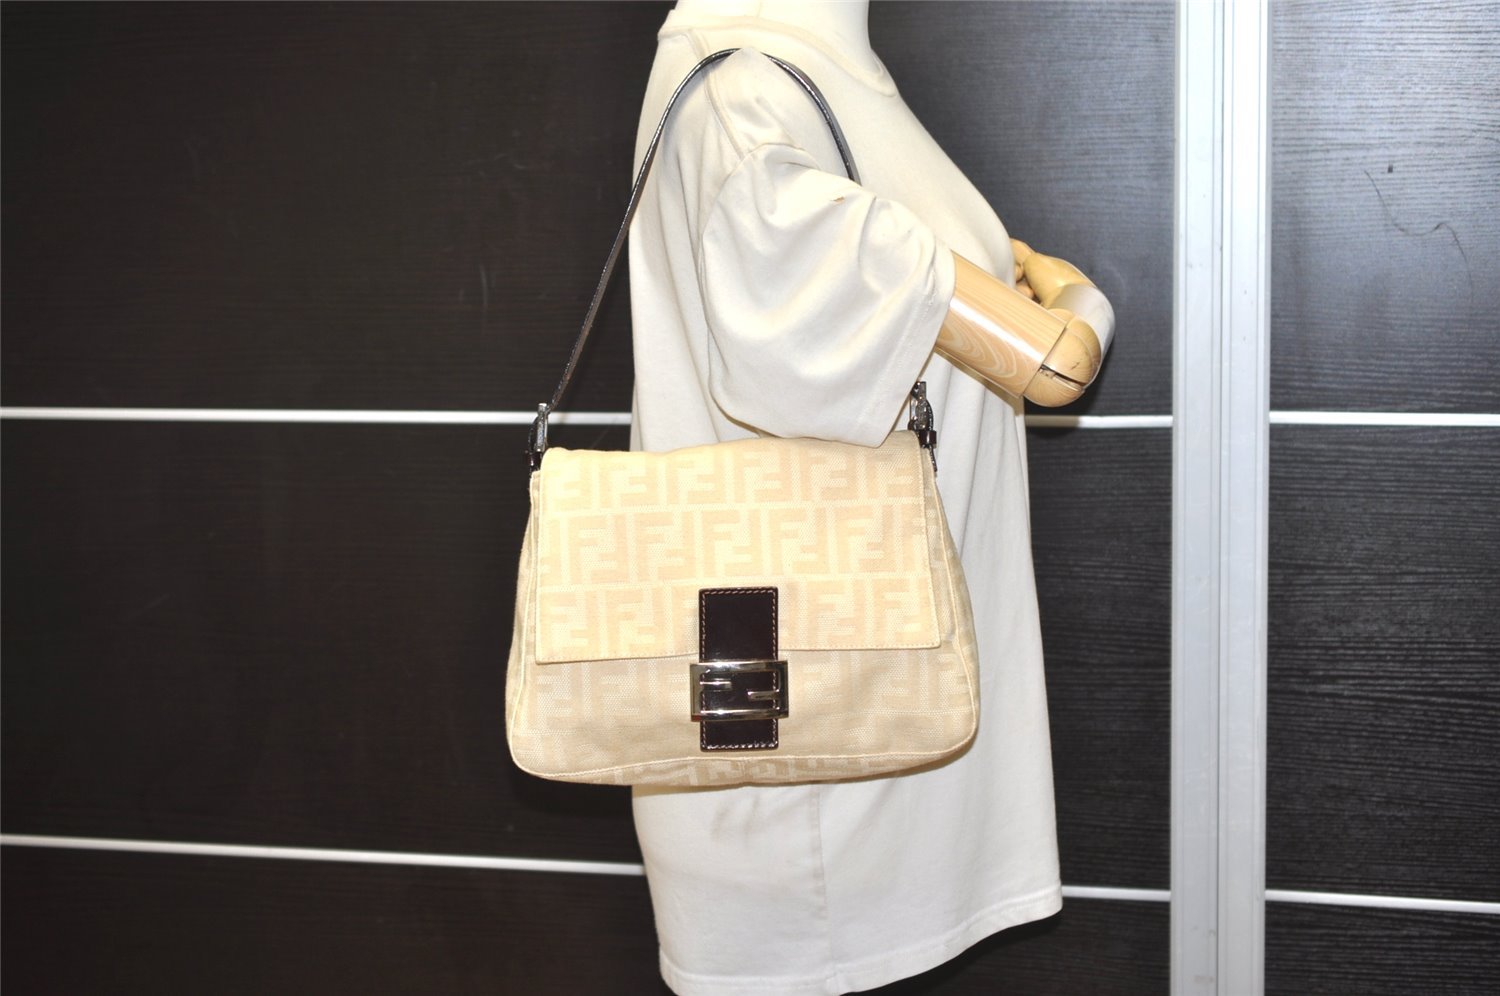 Authentic FENDI Zucca Mamma Baguette Shoulder Bag Canvas Leather Beige 6068J